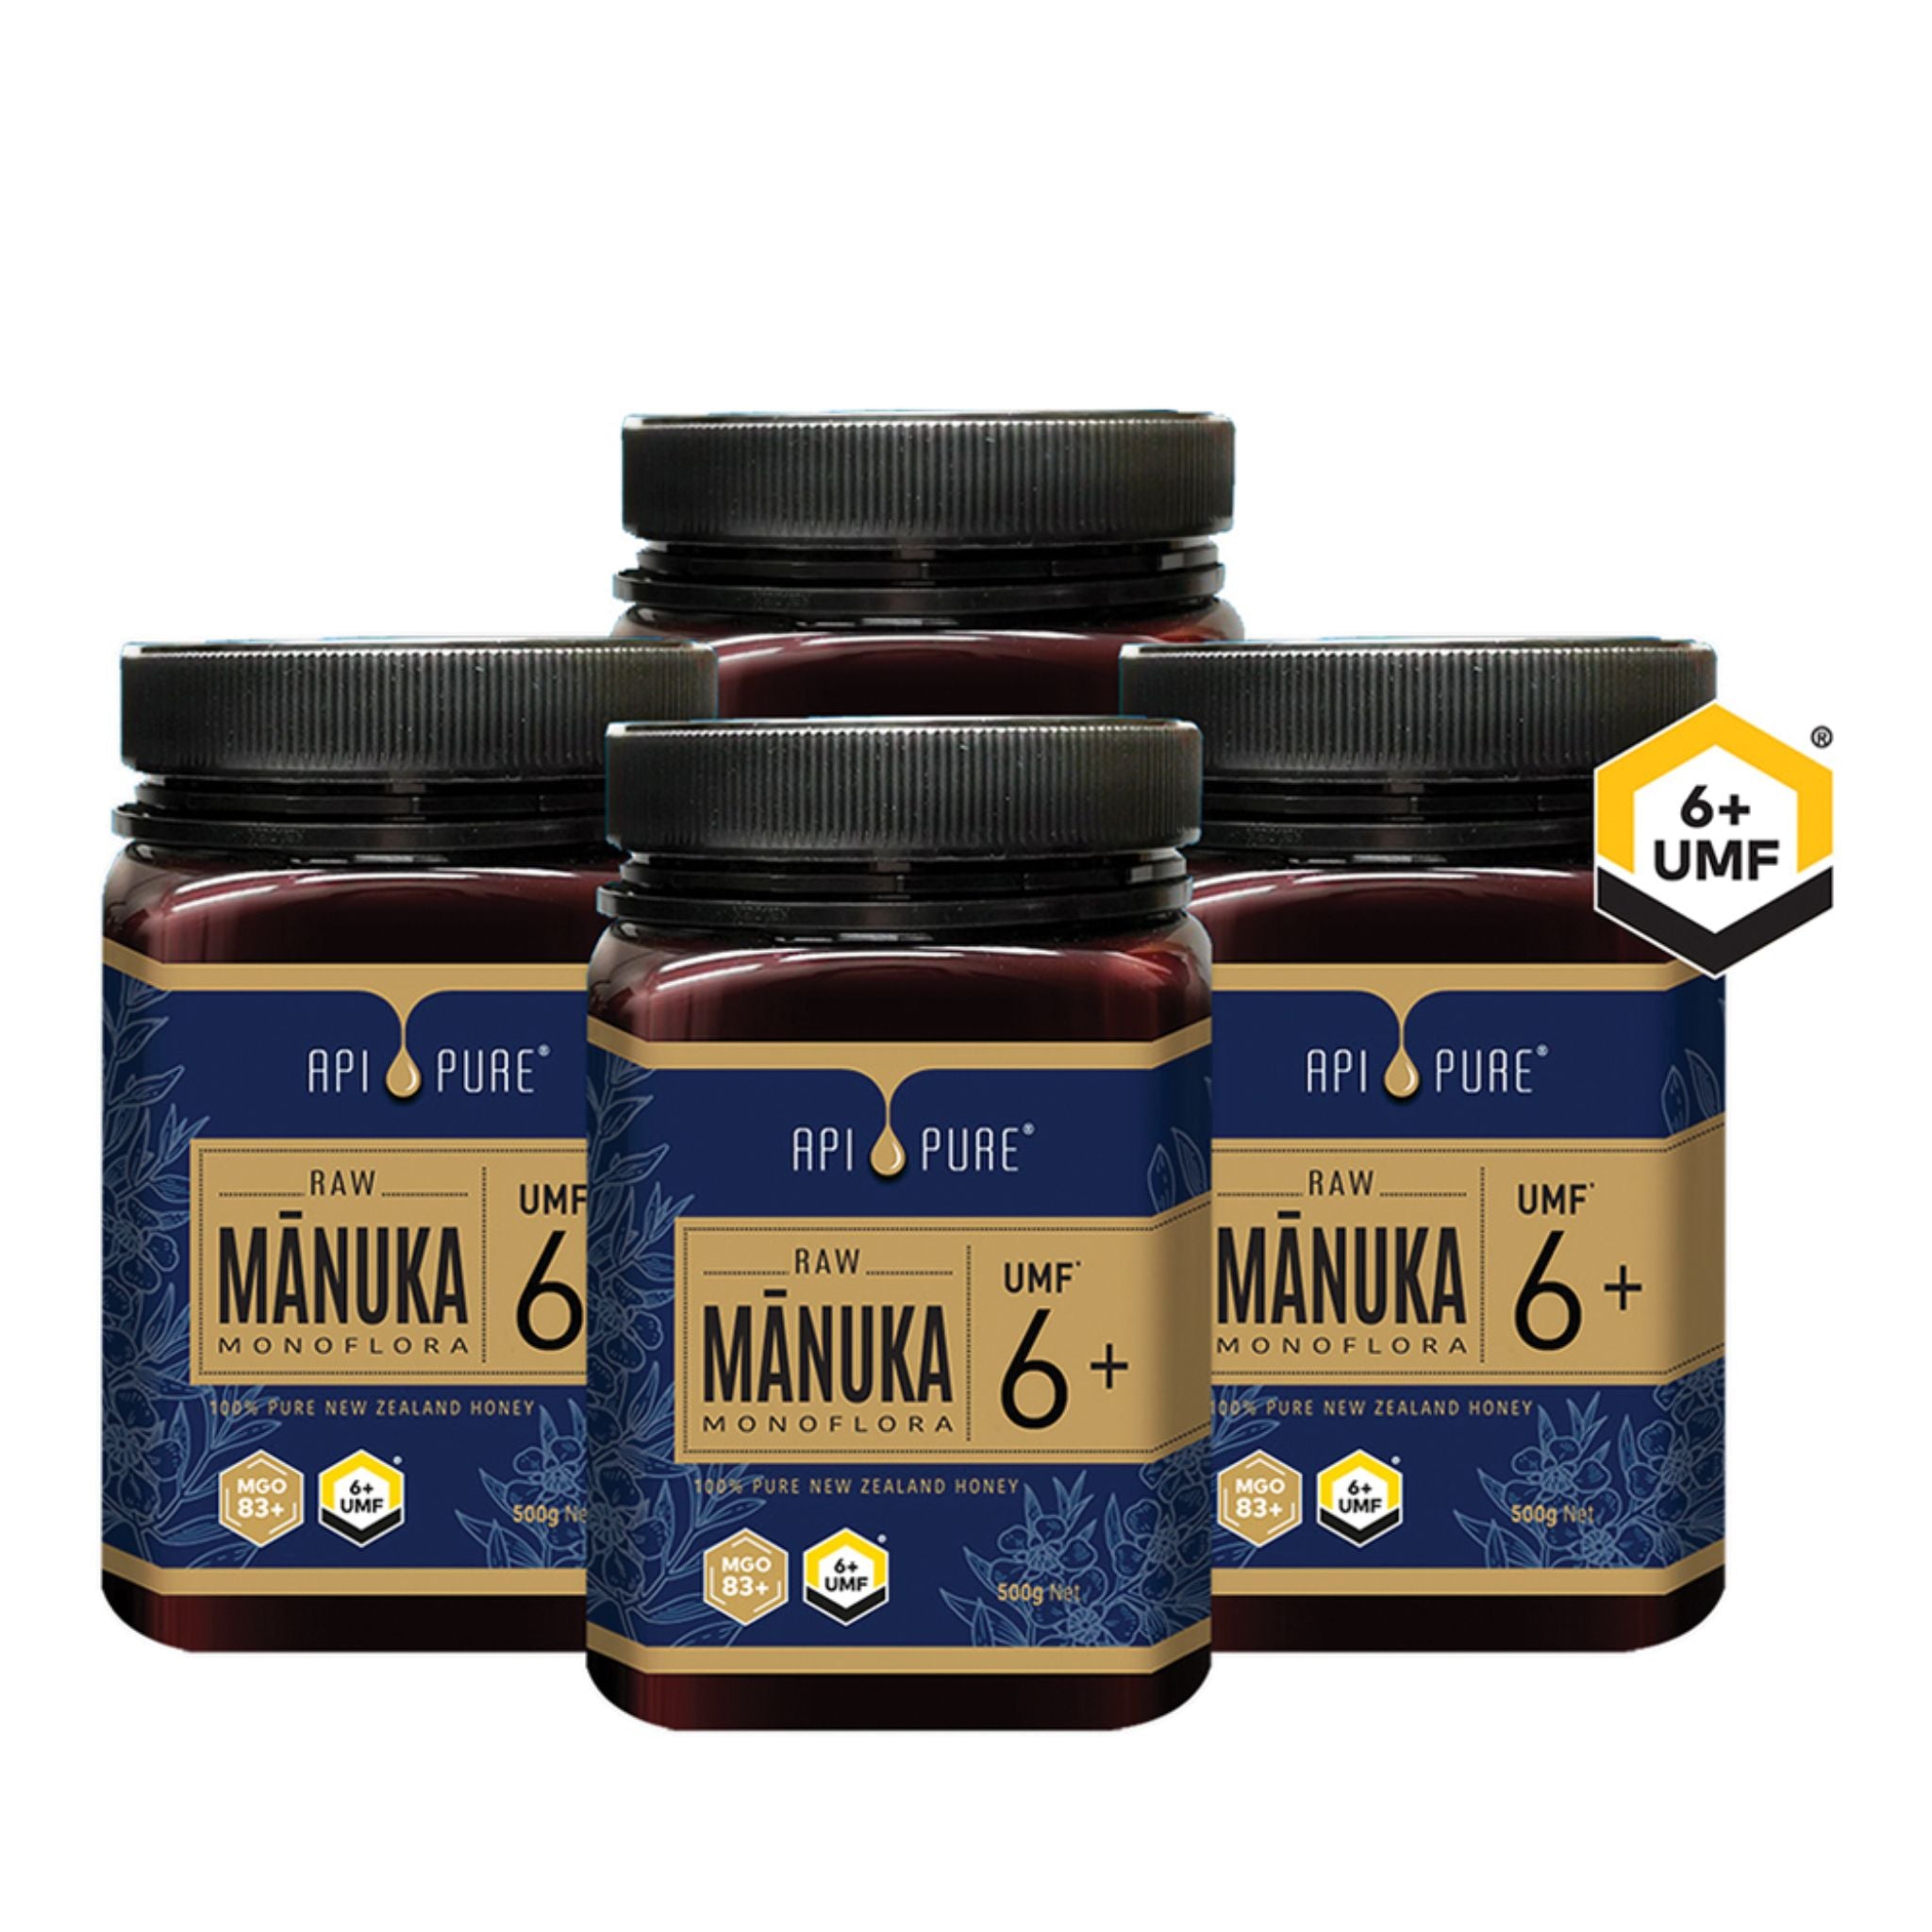 APIPURE Raw Manuka UMF 6+ 500g (Set of 4)